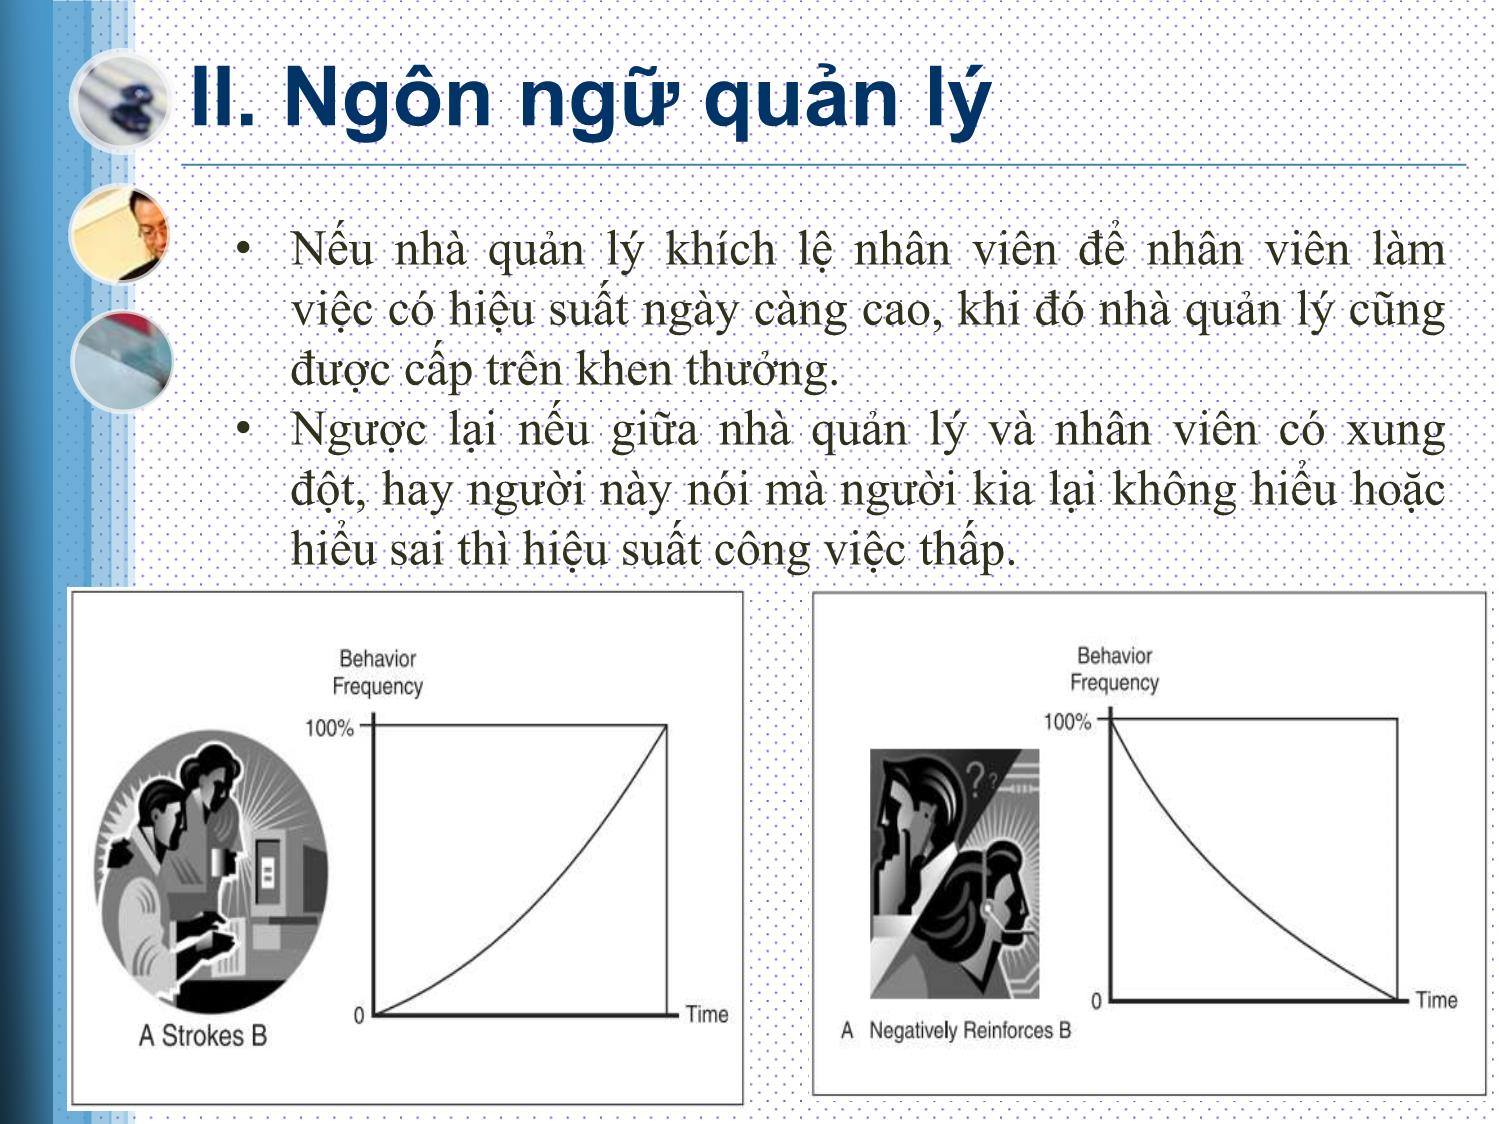 Bài thuyết trình Nhu cầu tư duy hệ thống trong quản lý dự án - Phạm Trần Anh trang 6